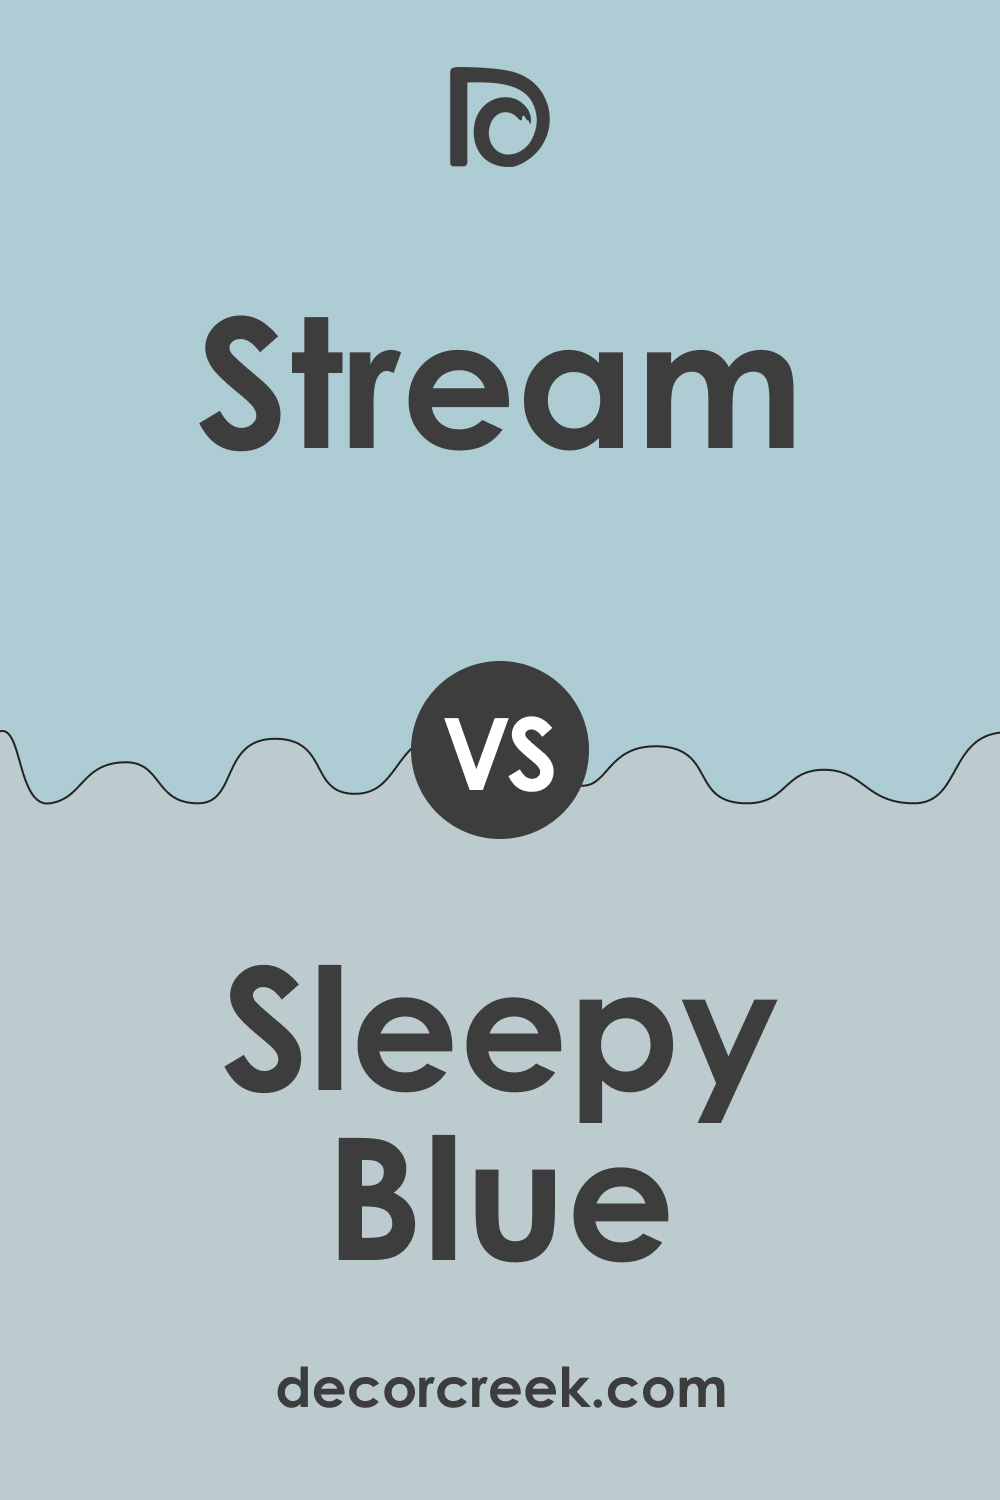 SW 6499 Stream vs SW 6225 Sleepy Blue